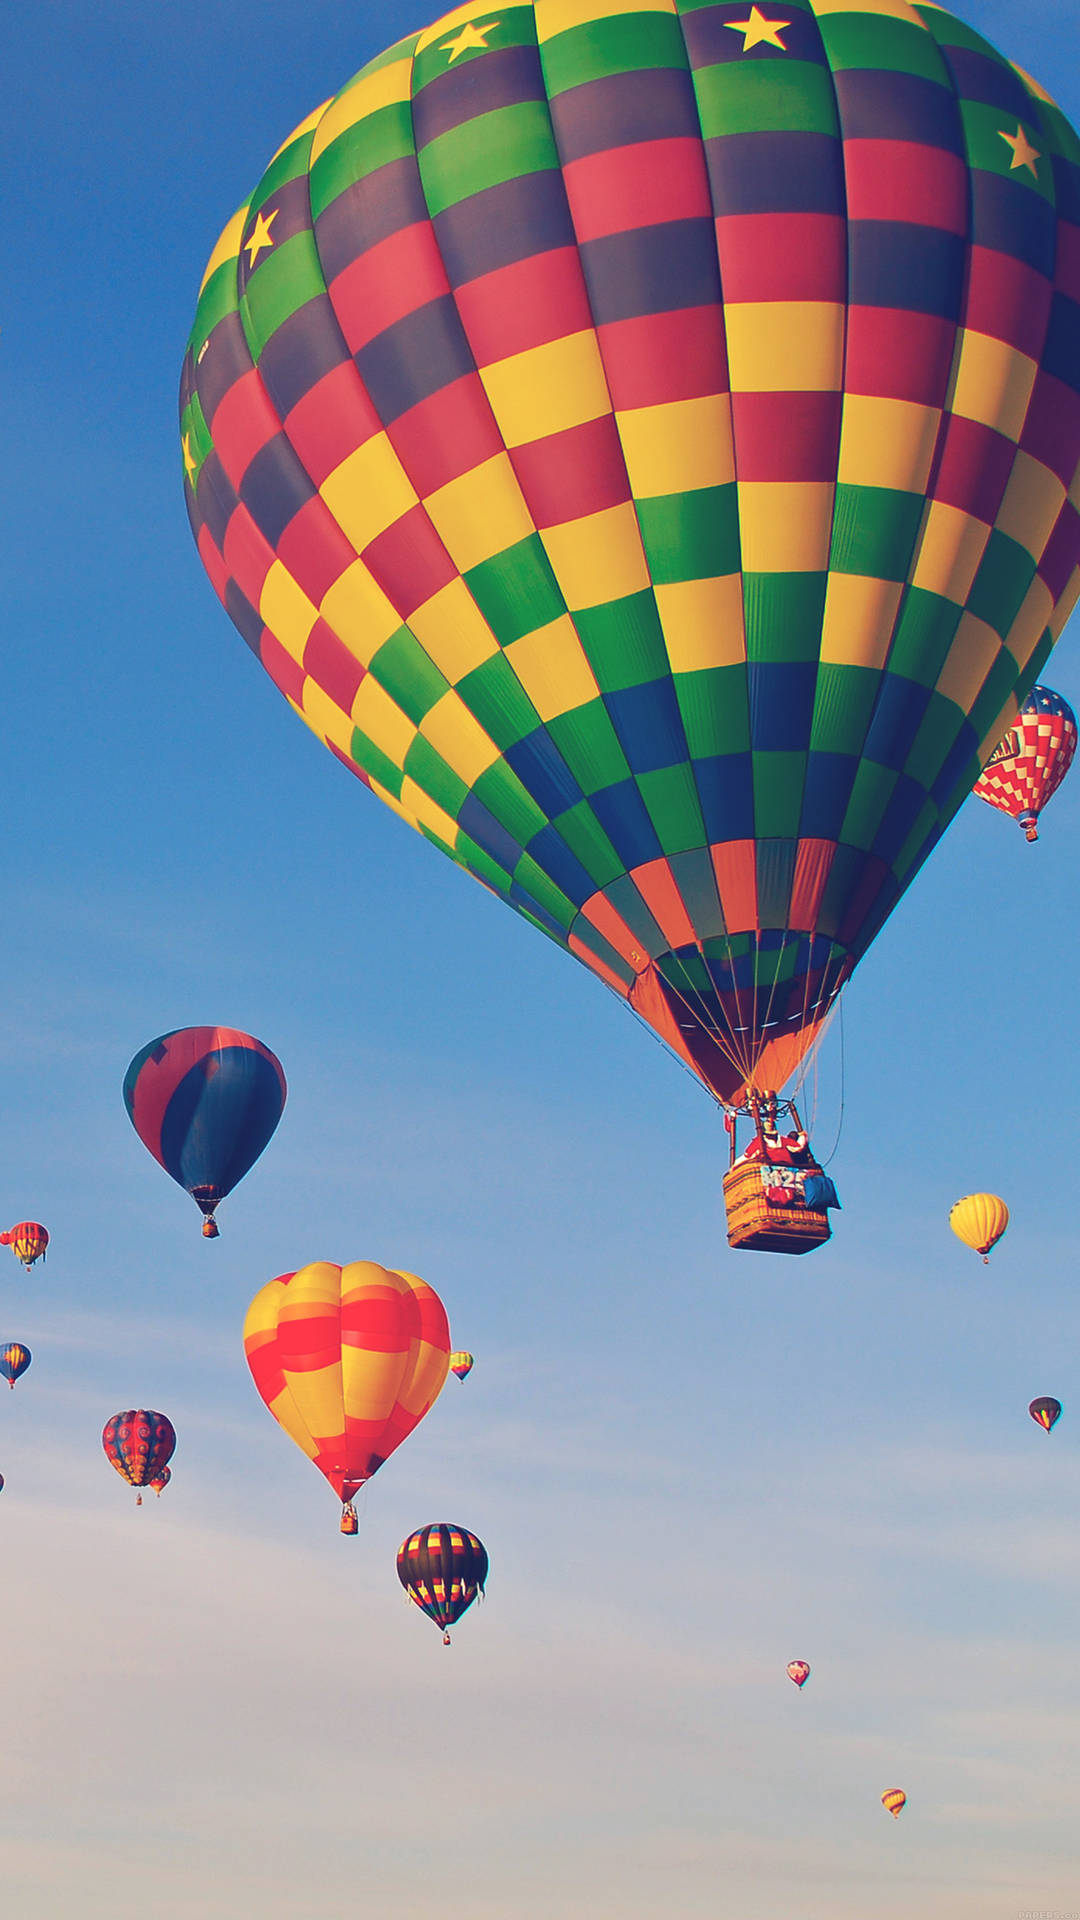 Free Hot Air Balloon Wallpaper Downloads, [100+] Hot Air Balloon Wallpapers  for FREE 